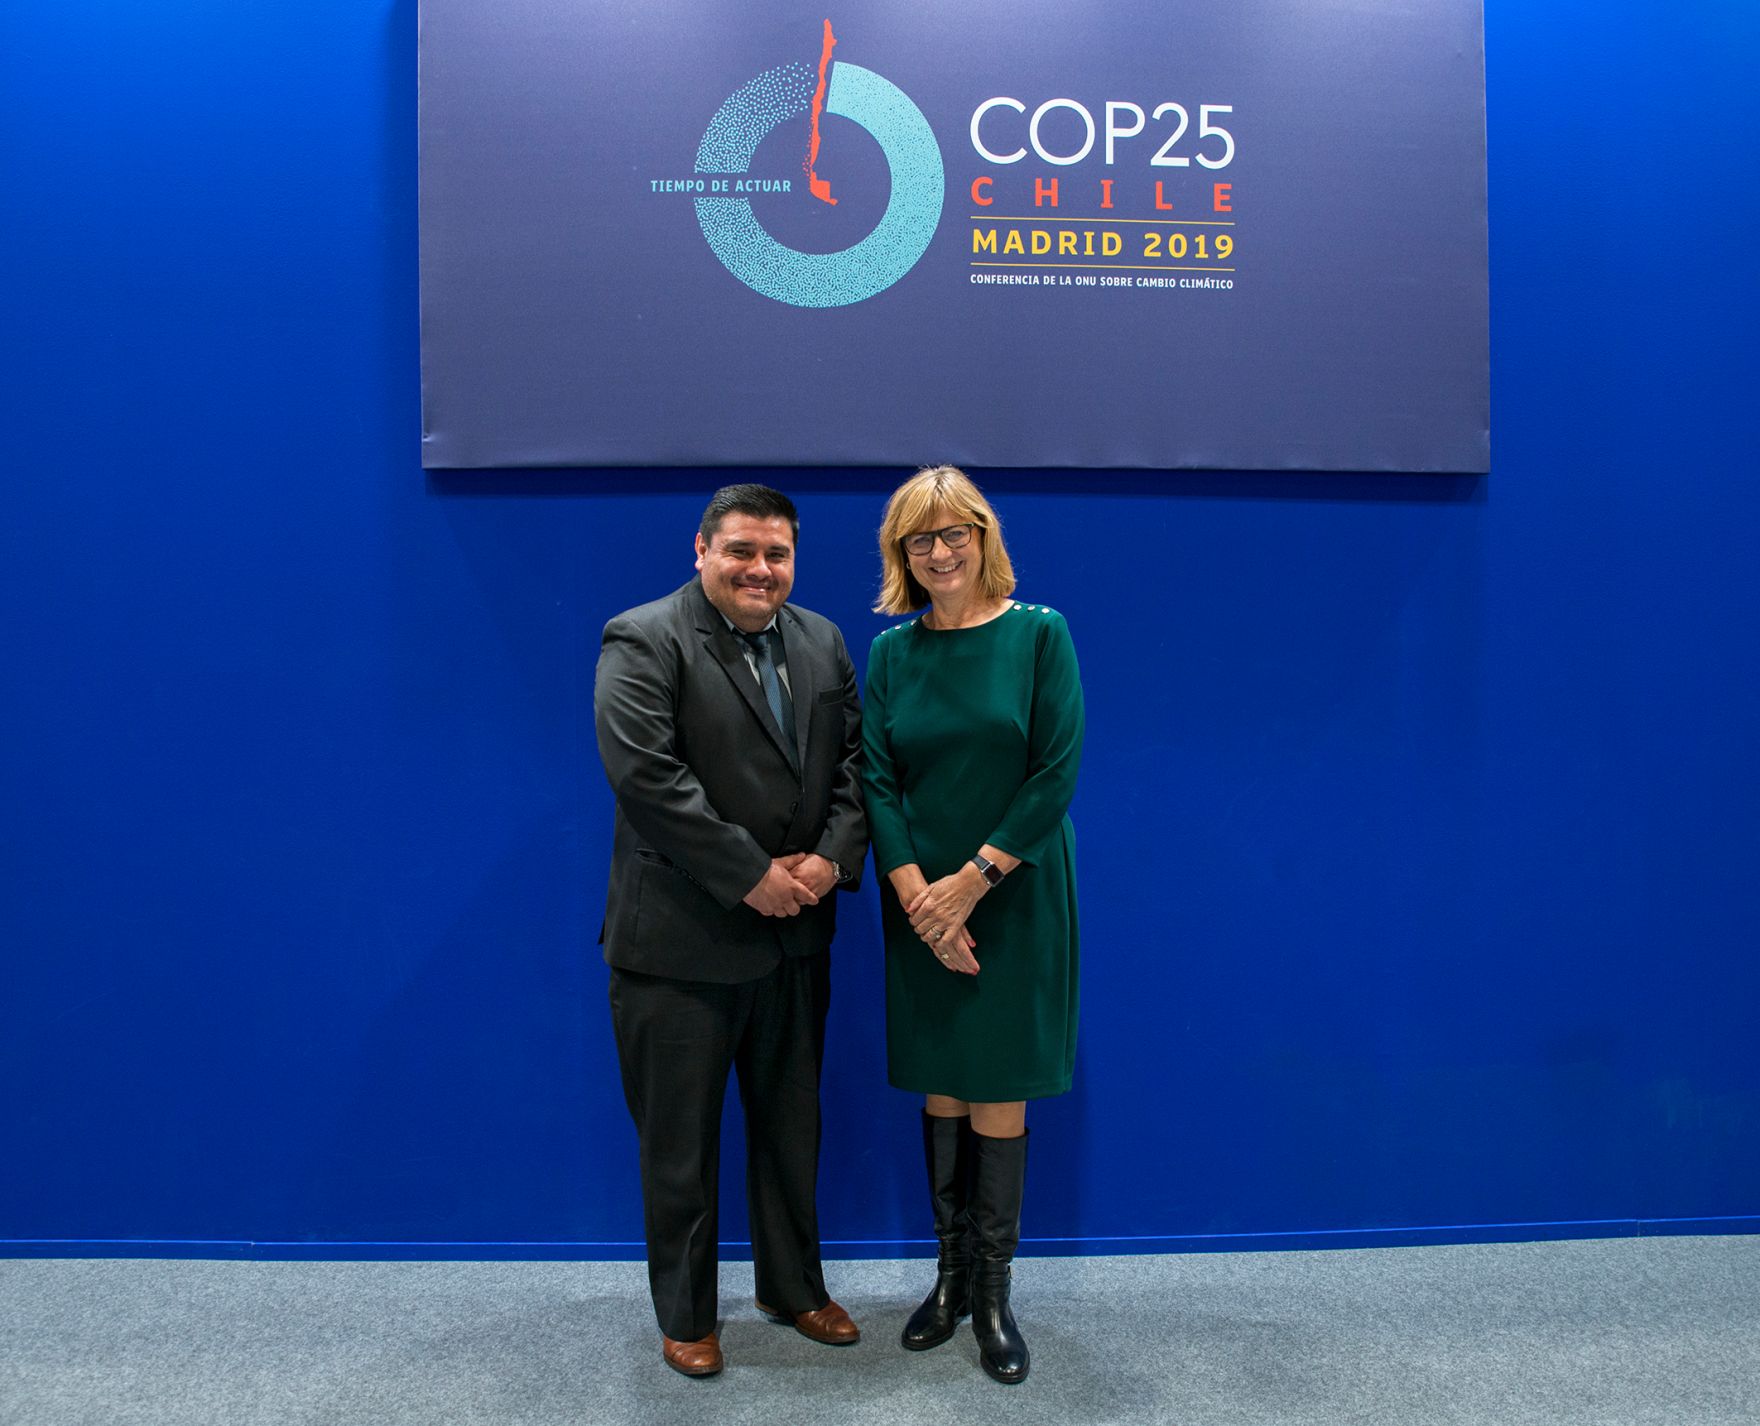 Nachhaltigkeitsministerin Maria Patek nahm im Dezember 2019 an der 25. UN-Klimakonferenz (COP25) in Madrid teil. Bei der Konferenz geht es vor allem darum, Regeln zu schaffen, die den globalen Klimaschutz unterst&uuml;tzen und eine effiziente und effektive Umsetzung des Pariser &Uuml;bereinkommens erlauben. Im Bild: Bundesministerin Maria Patek mit dem Vizeminister f&uuml;r nat&uuml;rliche Ressourcen und Klimawandel von Guatemala, Carlos Walberto Ramos Salguero.